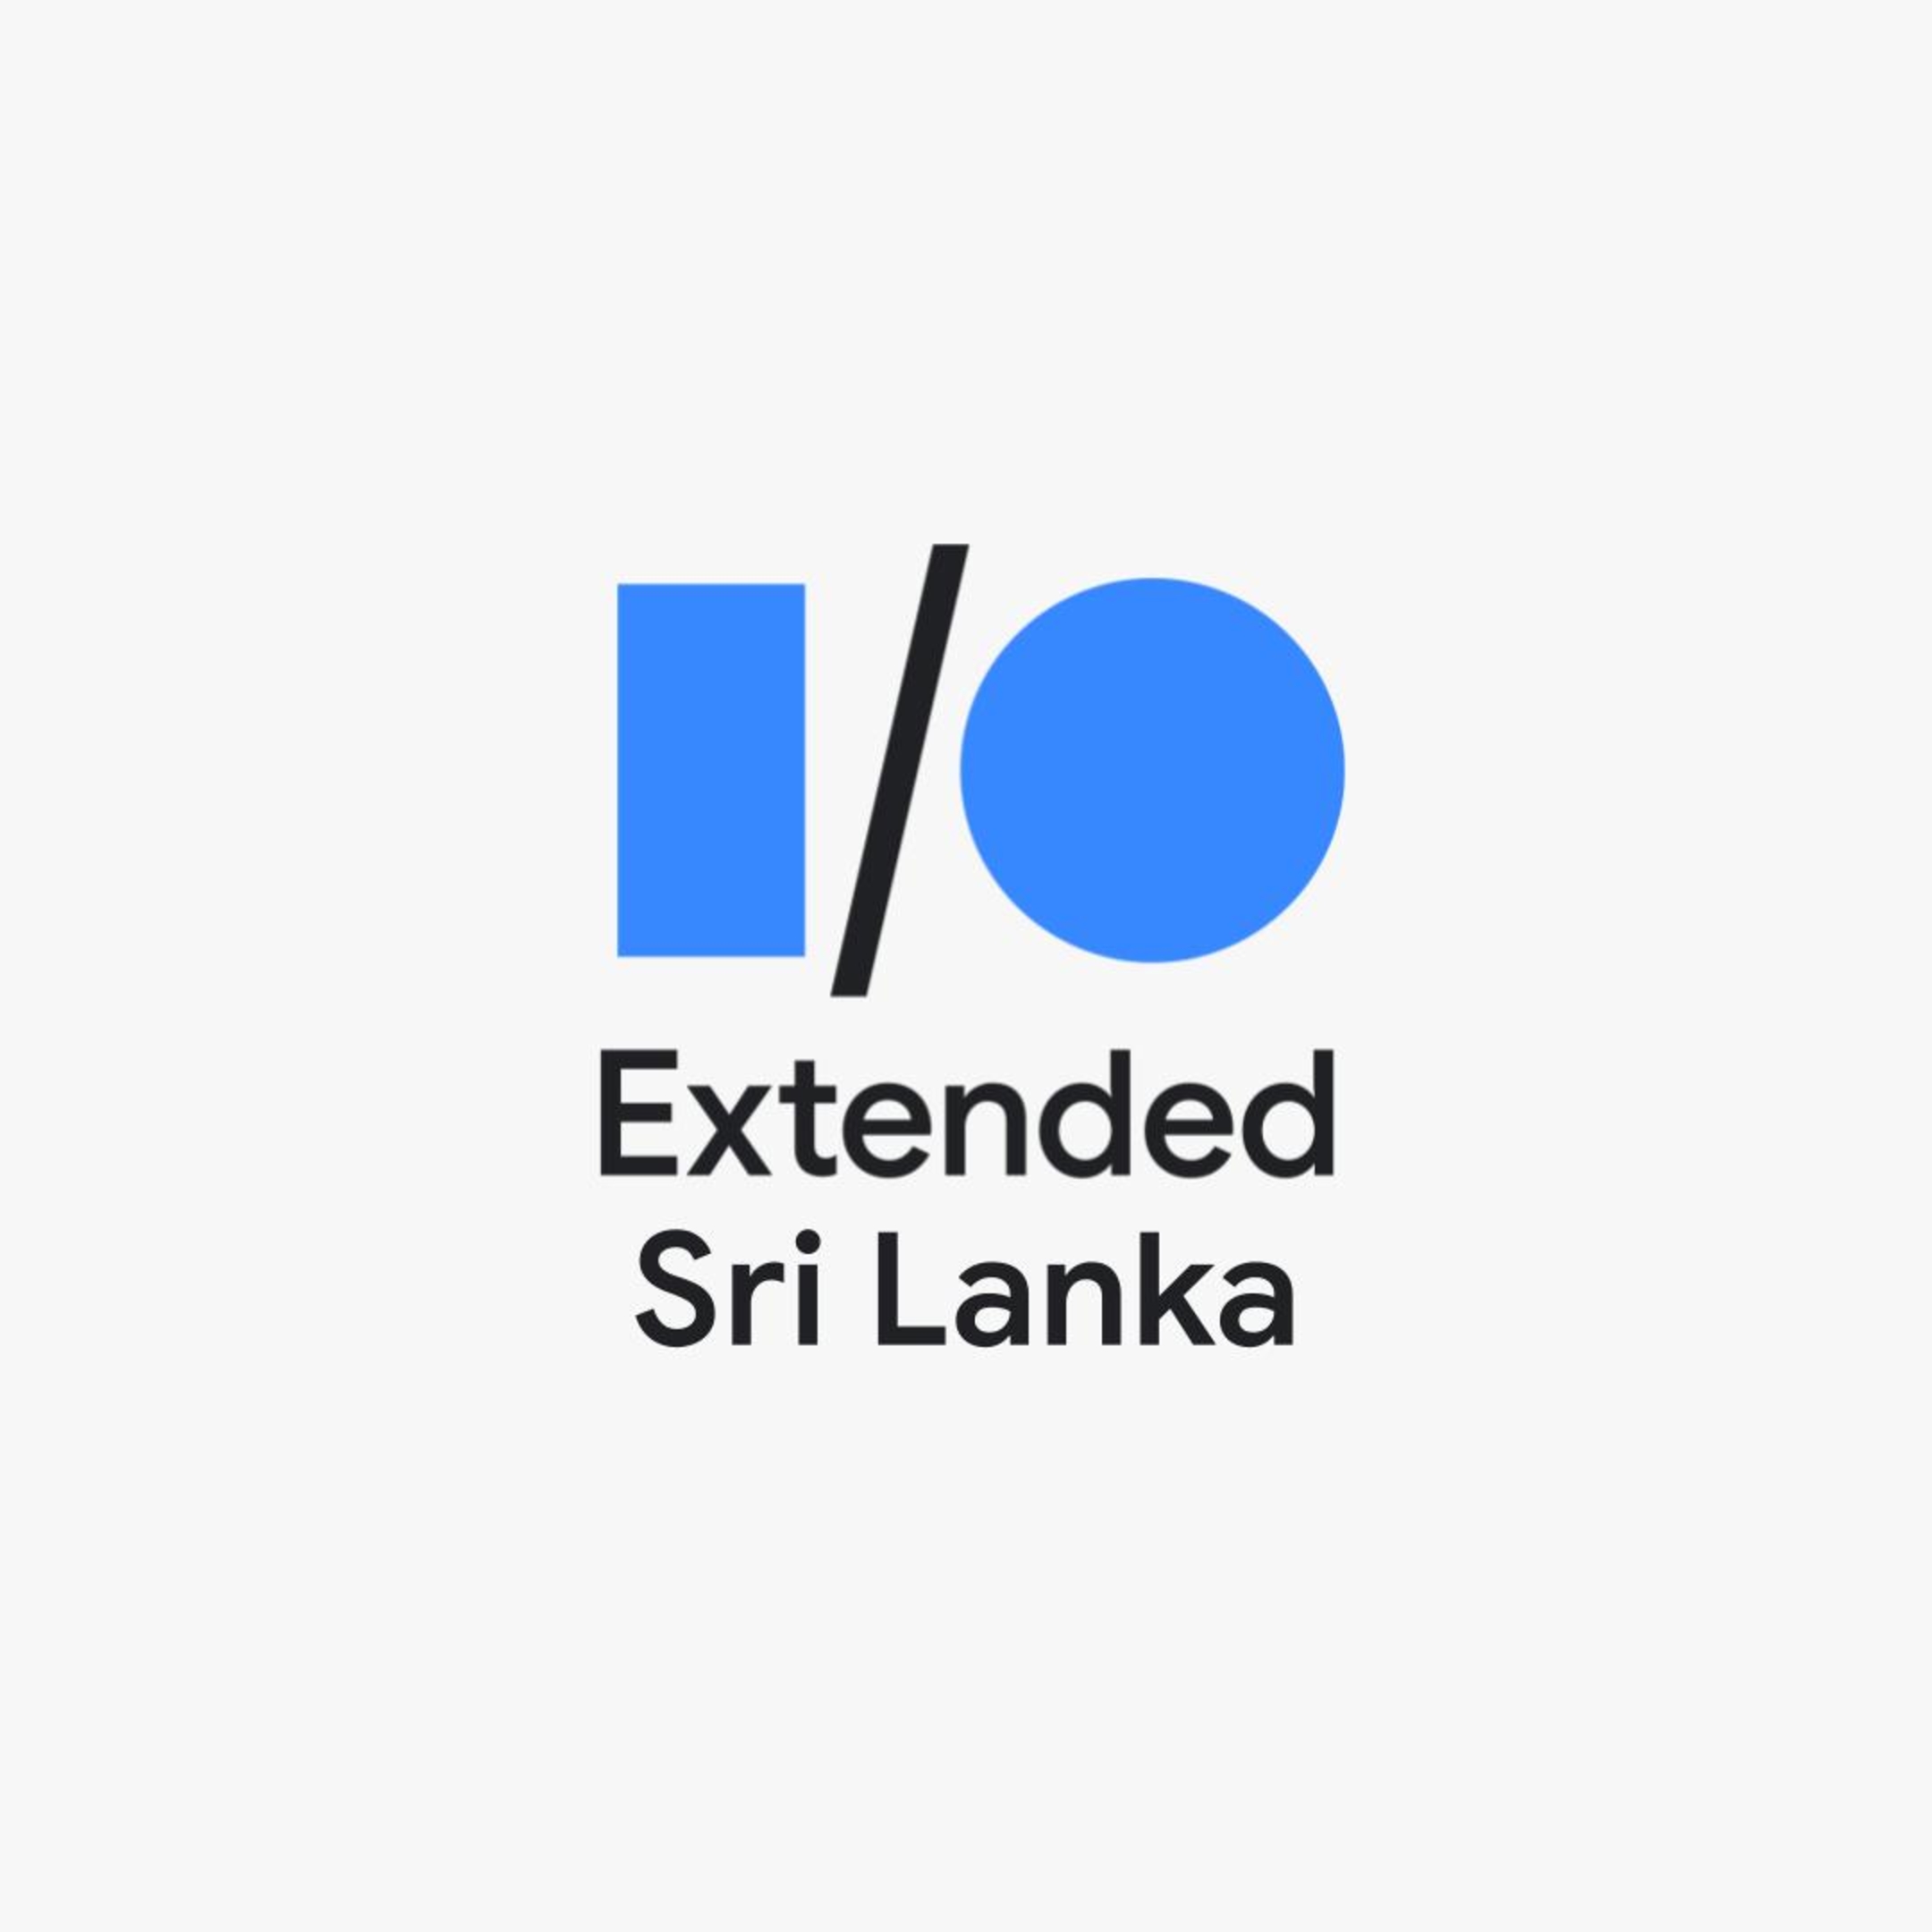 See Google I/O Extended Sri Lanka 2022 at Google Developer Groups GDG